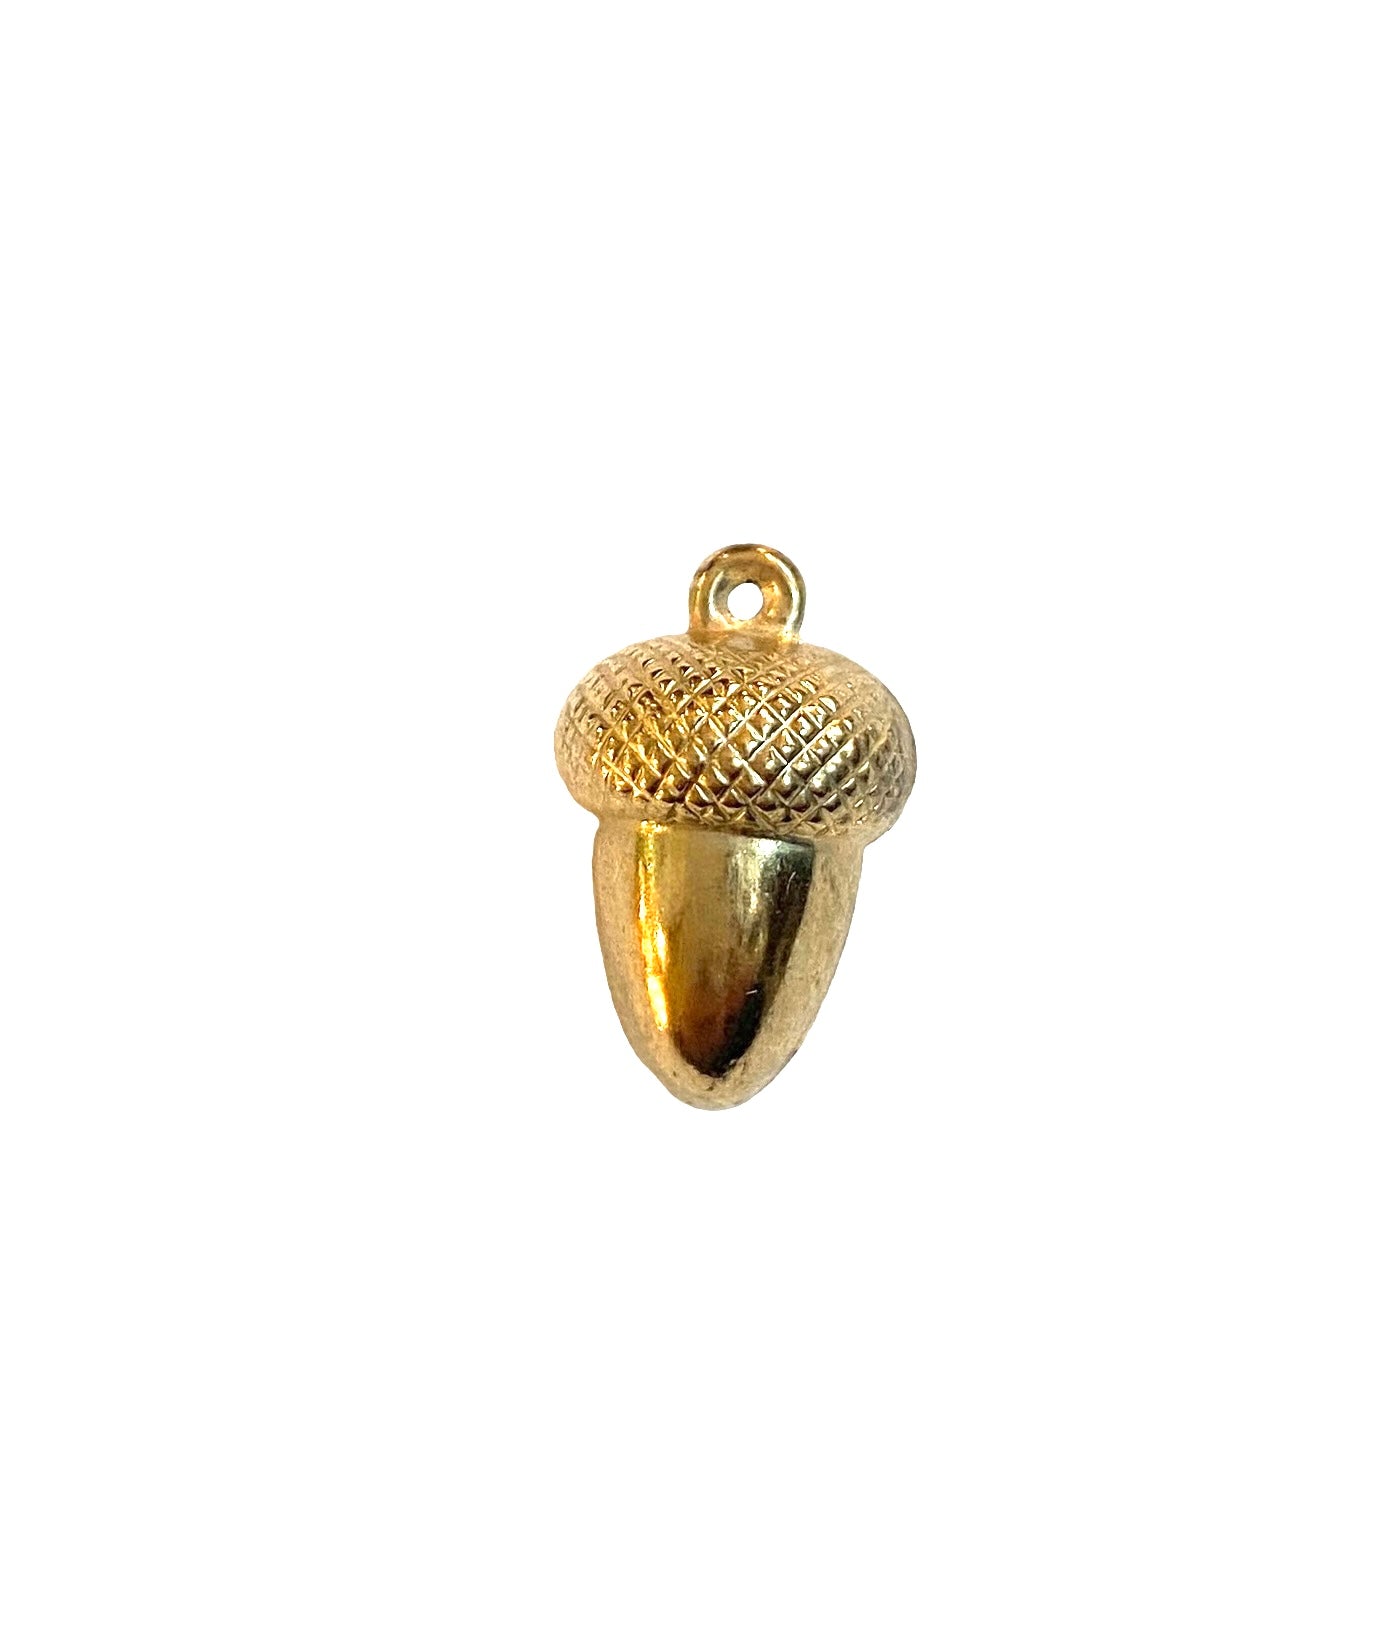 9ct vintage gold acorn charm/ pendant hollow